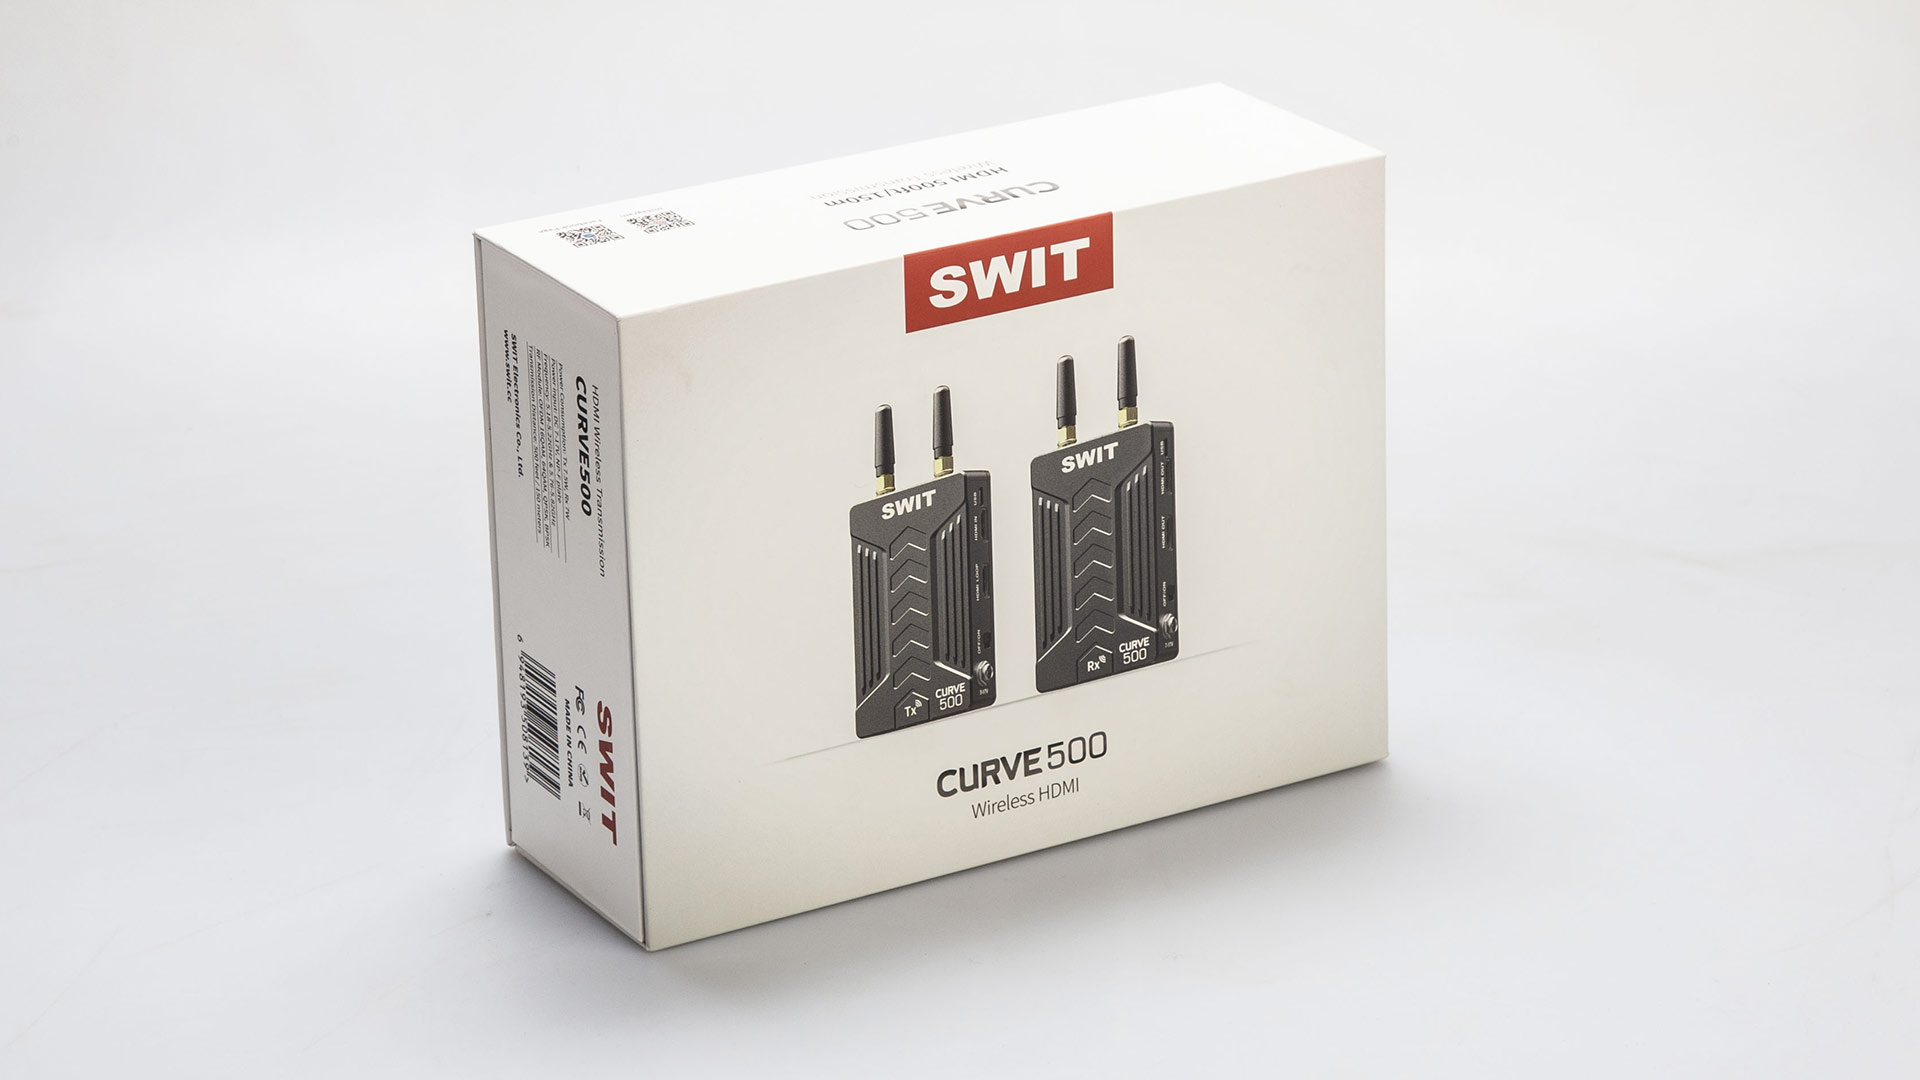 Bộ truyền Video không dây SWIT CURVE500 | Chính hãng